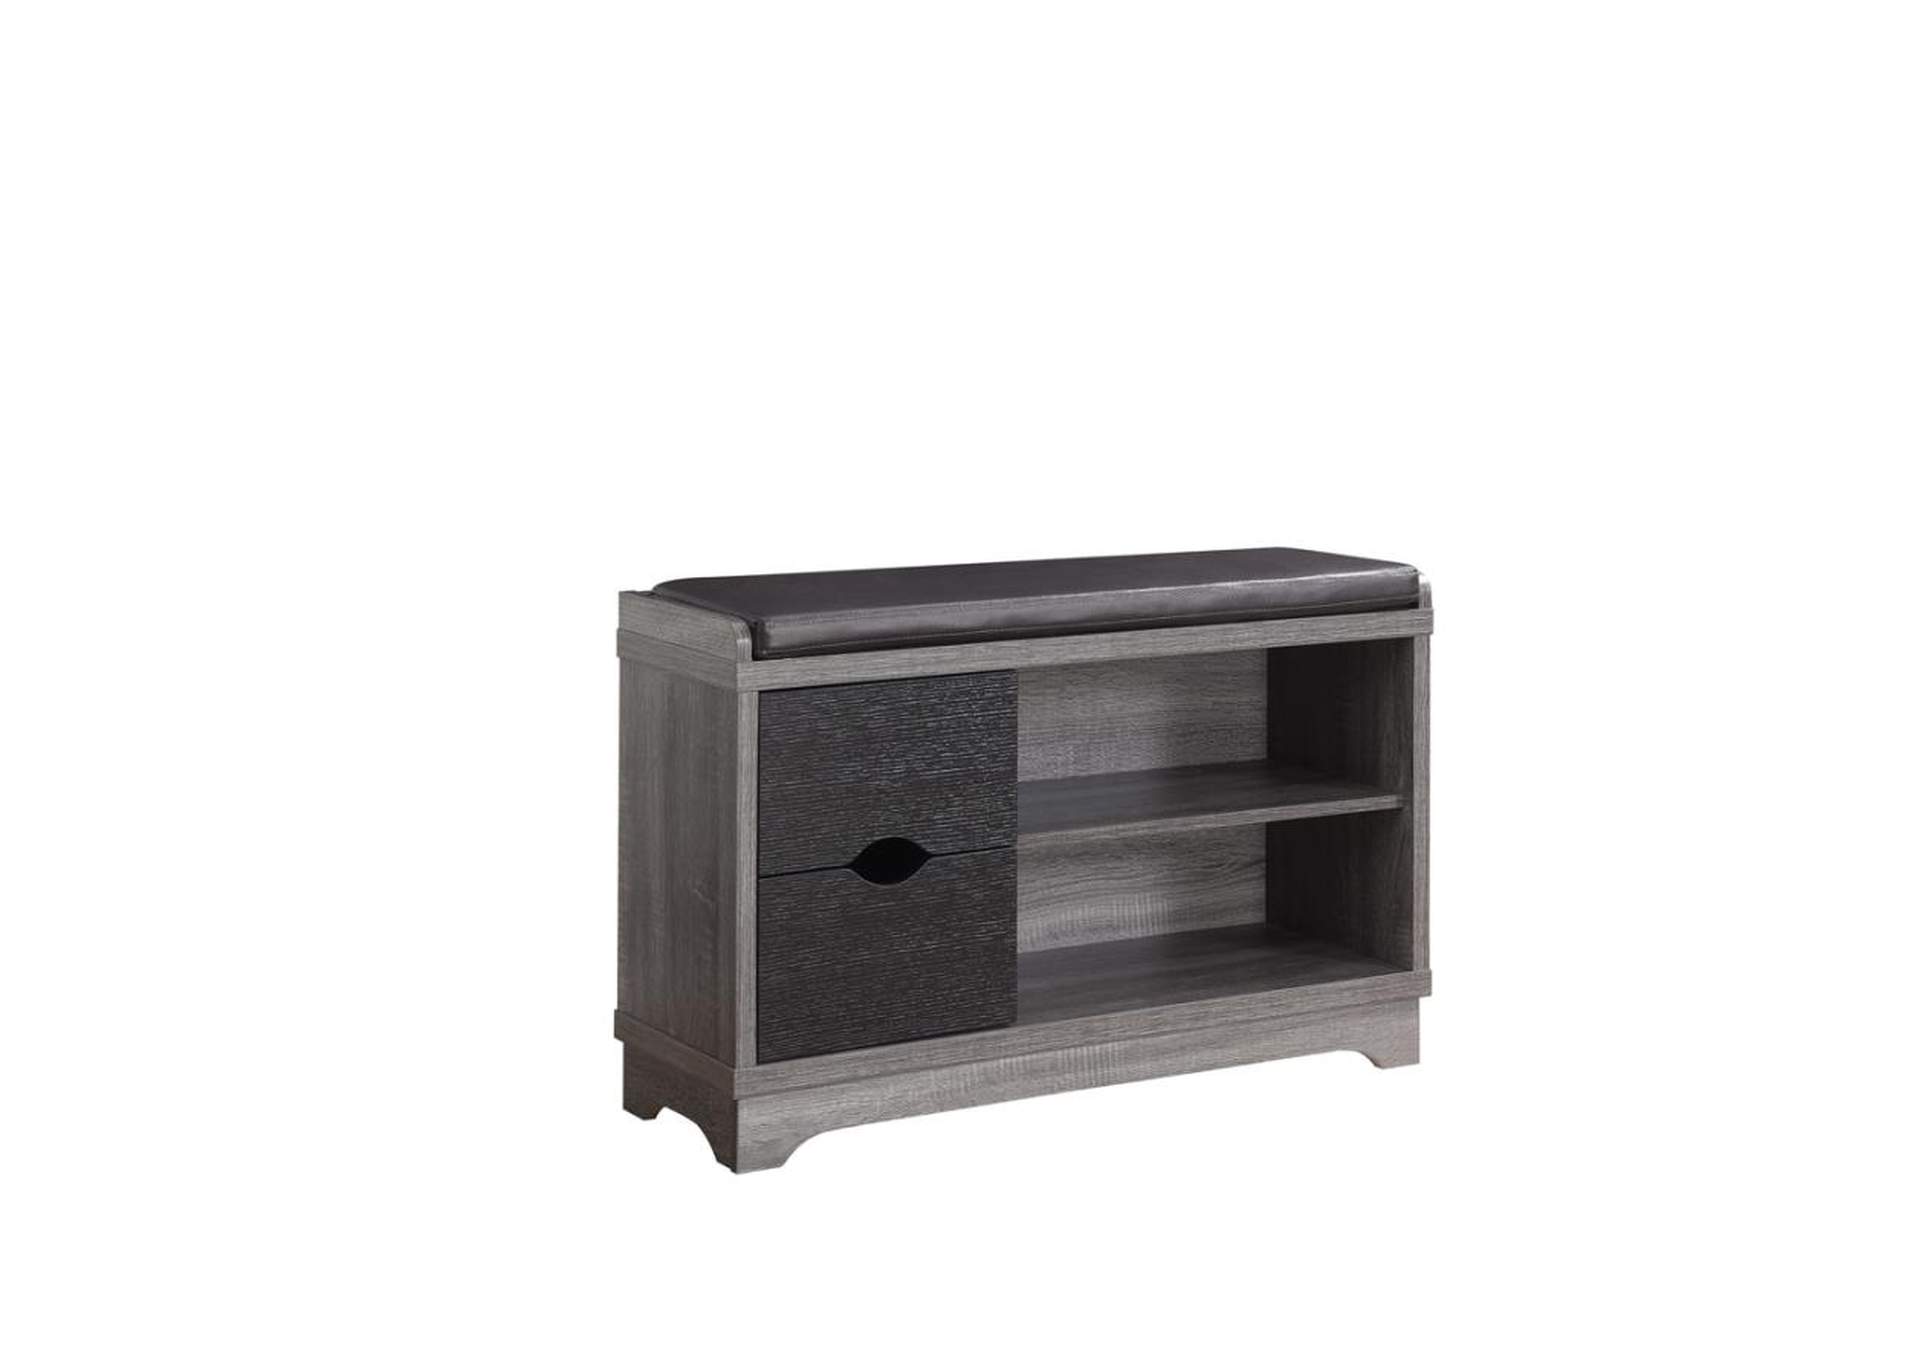 2-drawer Storage Bench Medium Brown and Black,Coaster Furniture